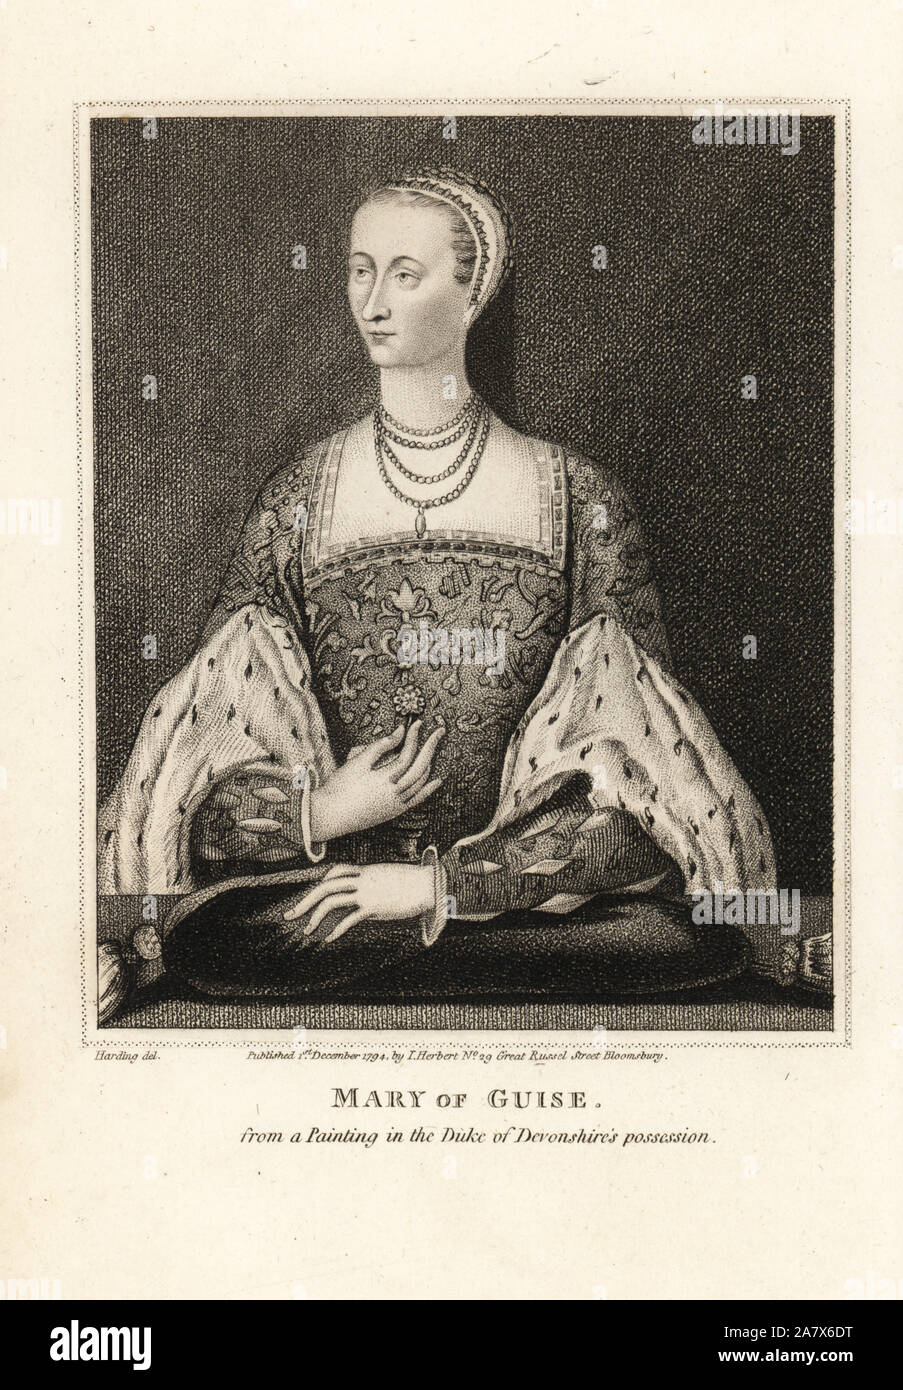 Maria von Guise, Königin von James V von Schottland, von einem Porträt in den Besitz des Herzogs von Devonshire. Kupferstich von Harding von John pinkertons Iconographia Scotica, oder Porträts von berühmten Personen von Schottland, London, 1797. Stockfoto